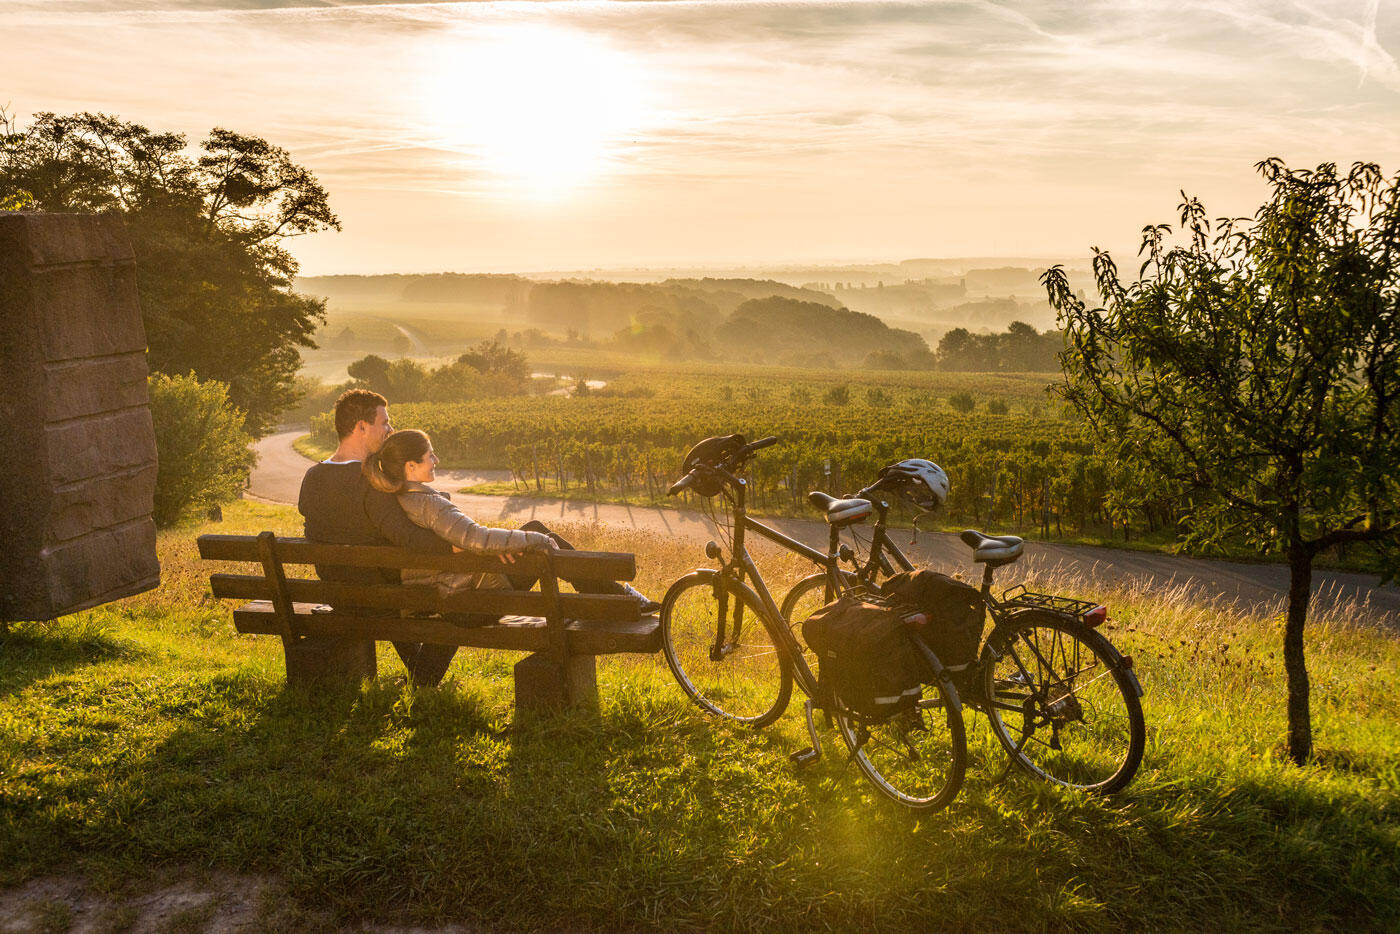 Pärchen, dass auf einer Bank sitzt und den Sonnenuntergang über den Weinbergen beobachtet. Am Rand stehen zwei Fahrräder.